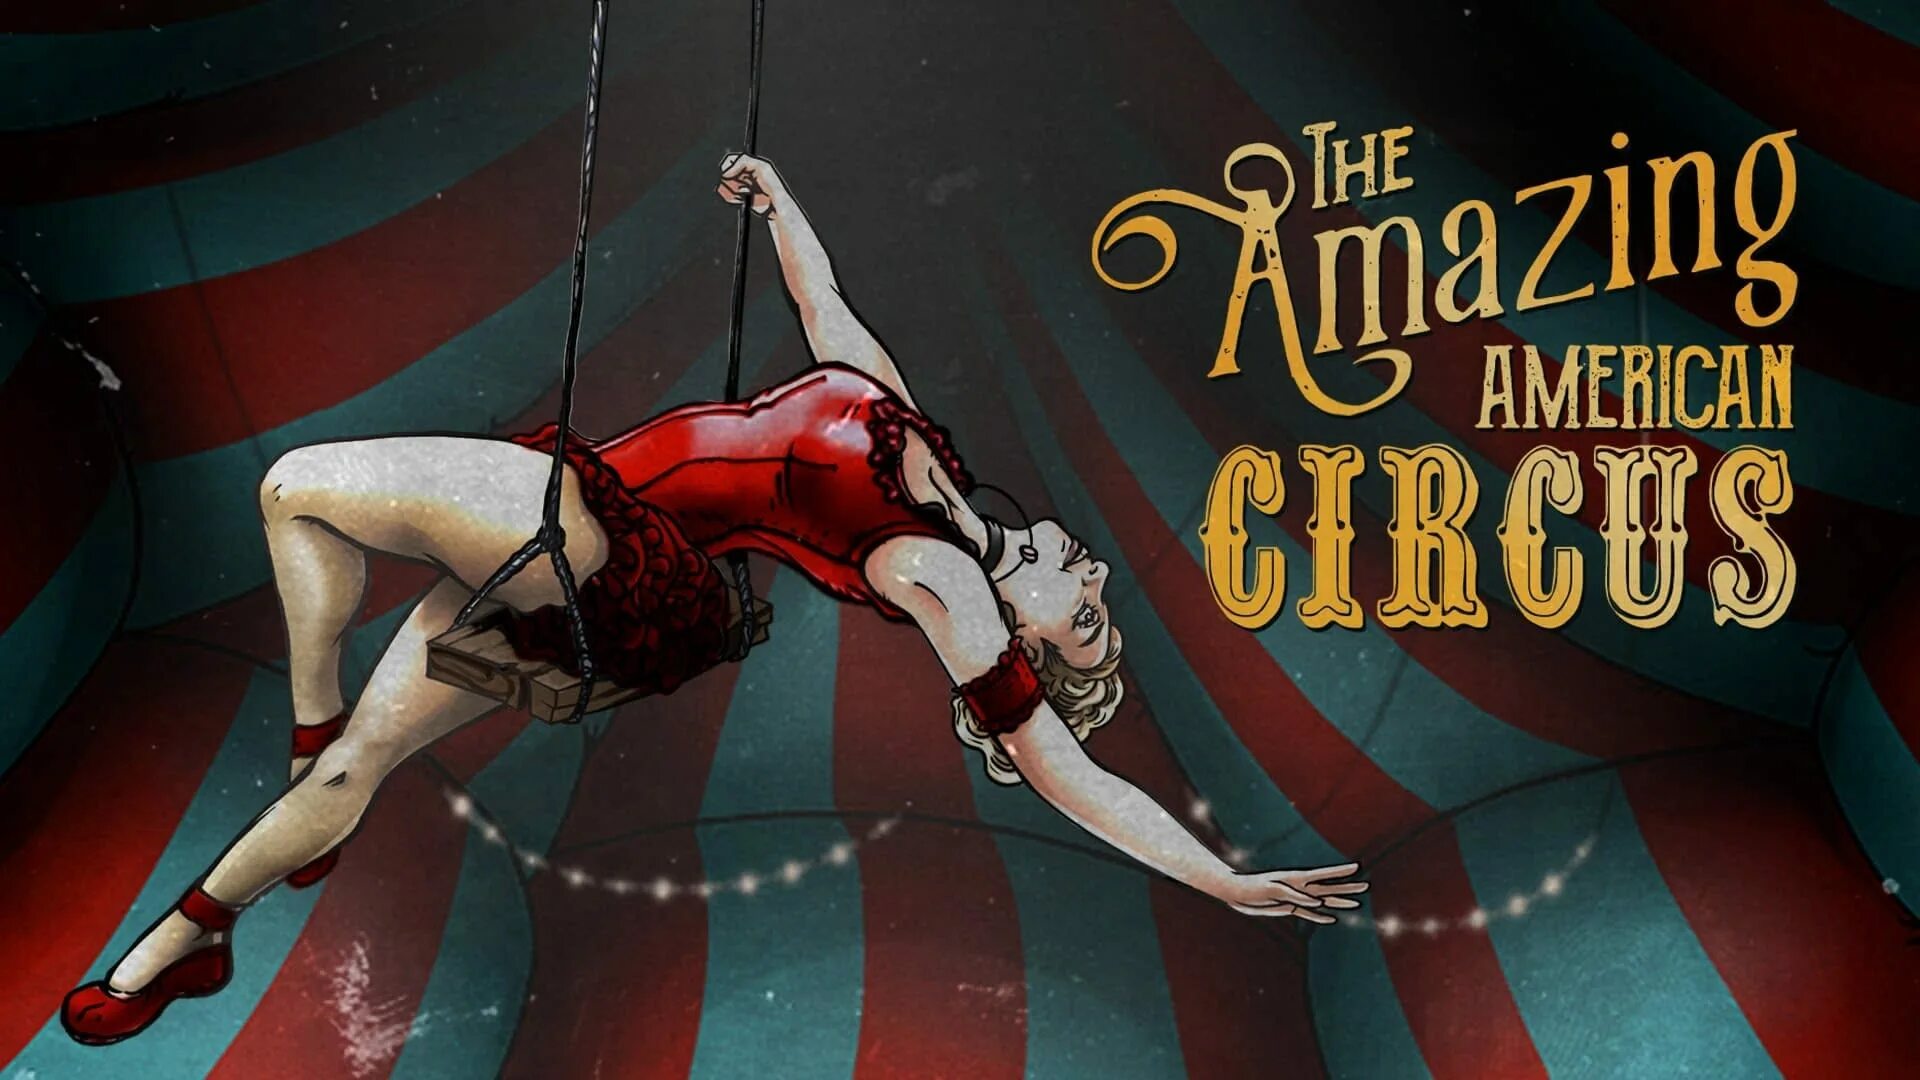 Ролики цифровой цирк. Американский цирк. Цирк заставка. Симулятор цирка. The amazing American Circus.